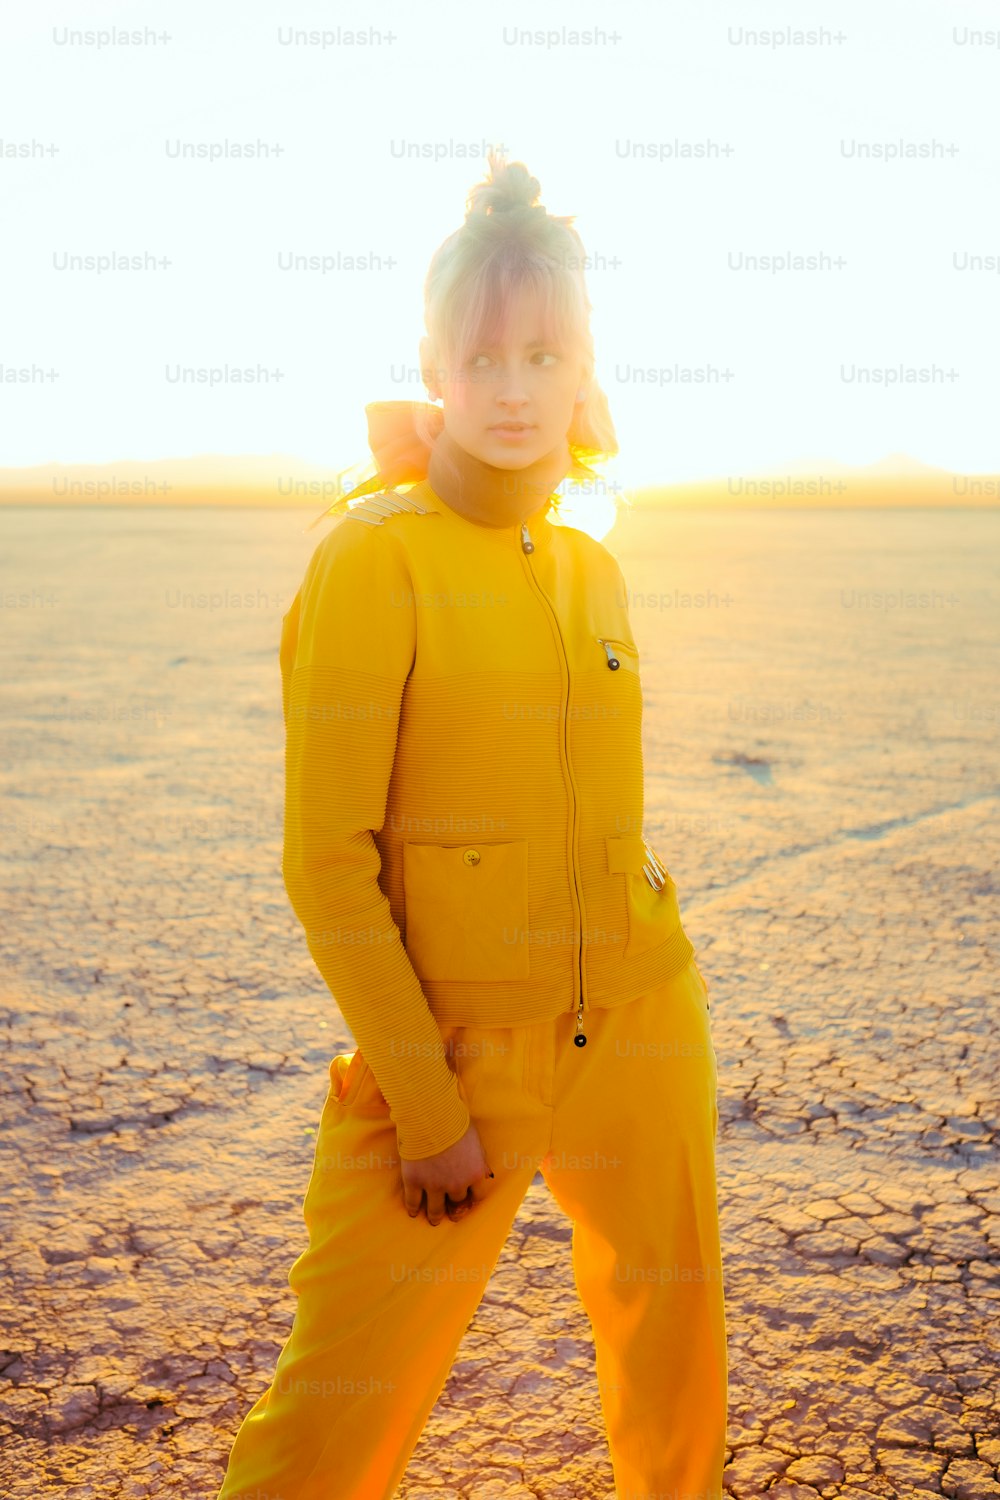 Una persona con un traje amarillo parada en el desierto